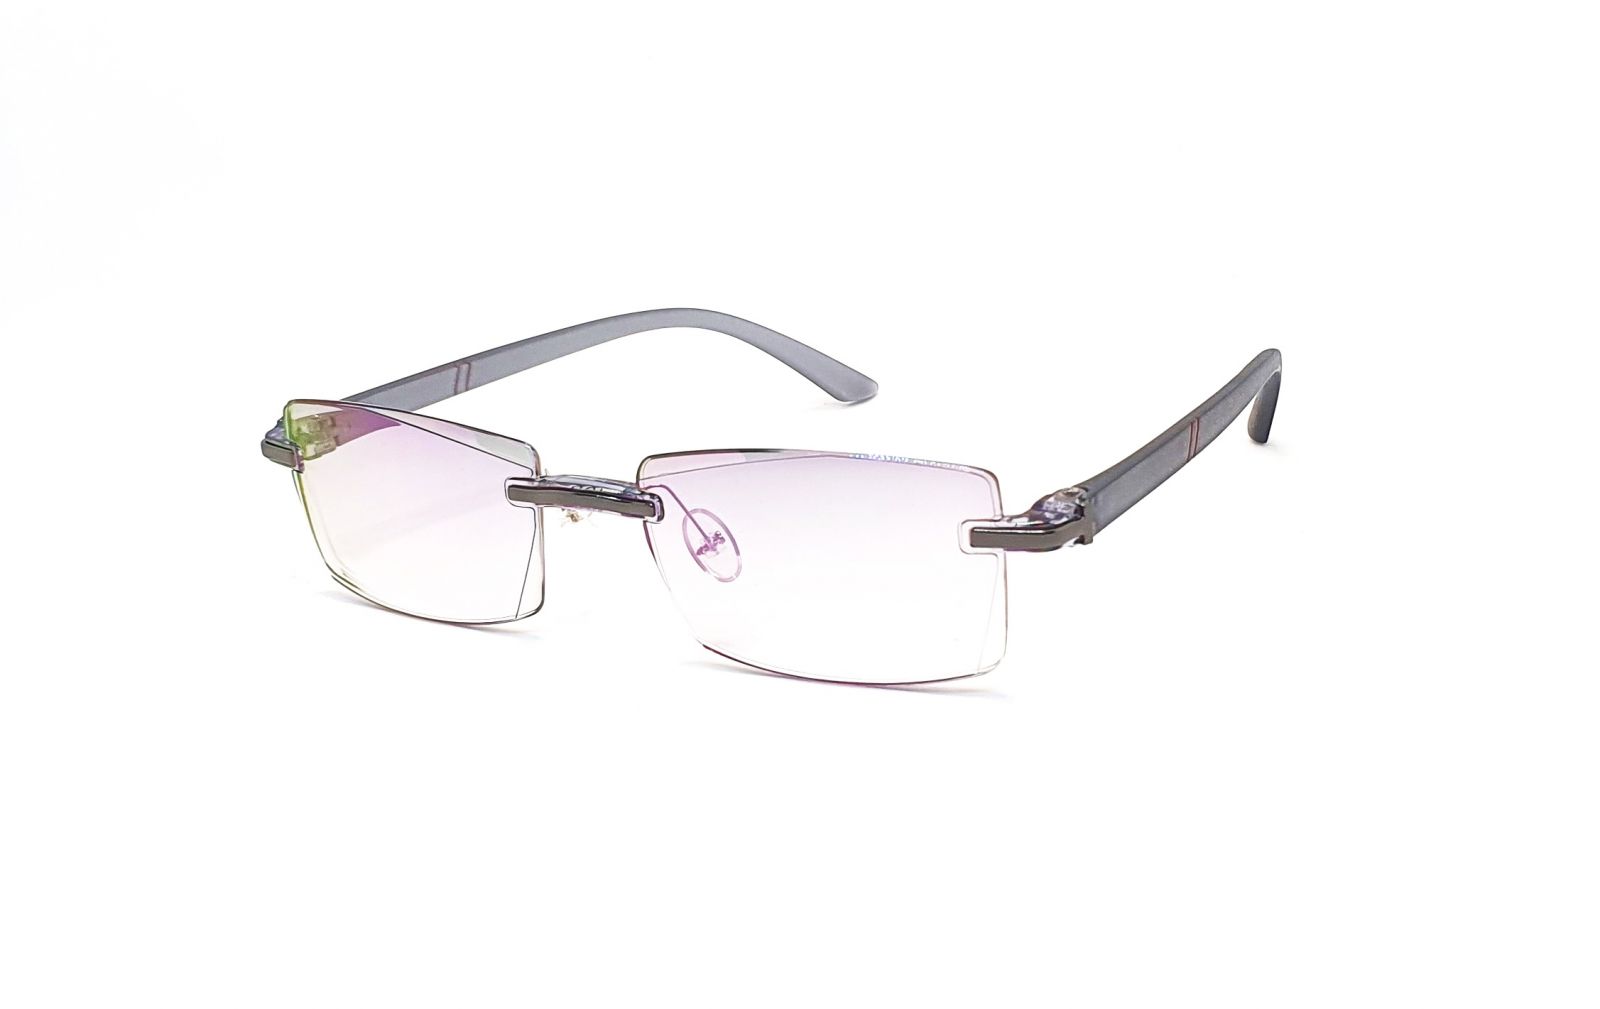 Bezrámečkové dioptrické brýle 346 / -0,50 s antireflexní vrstvou